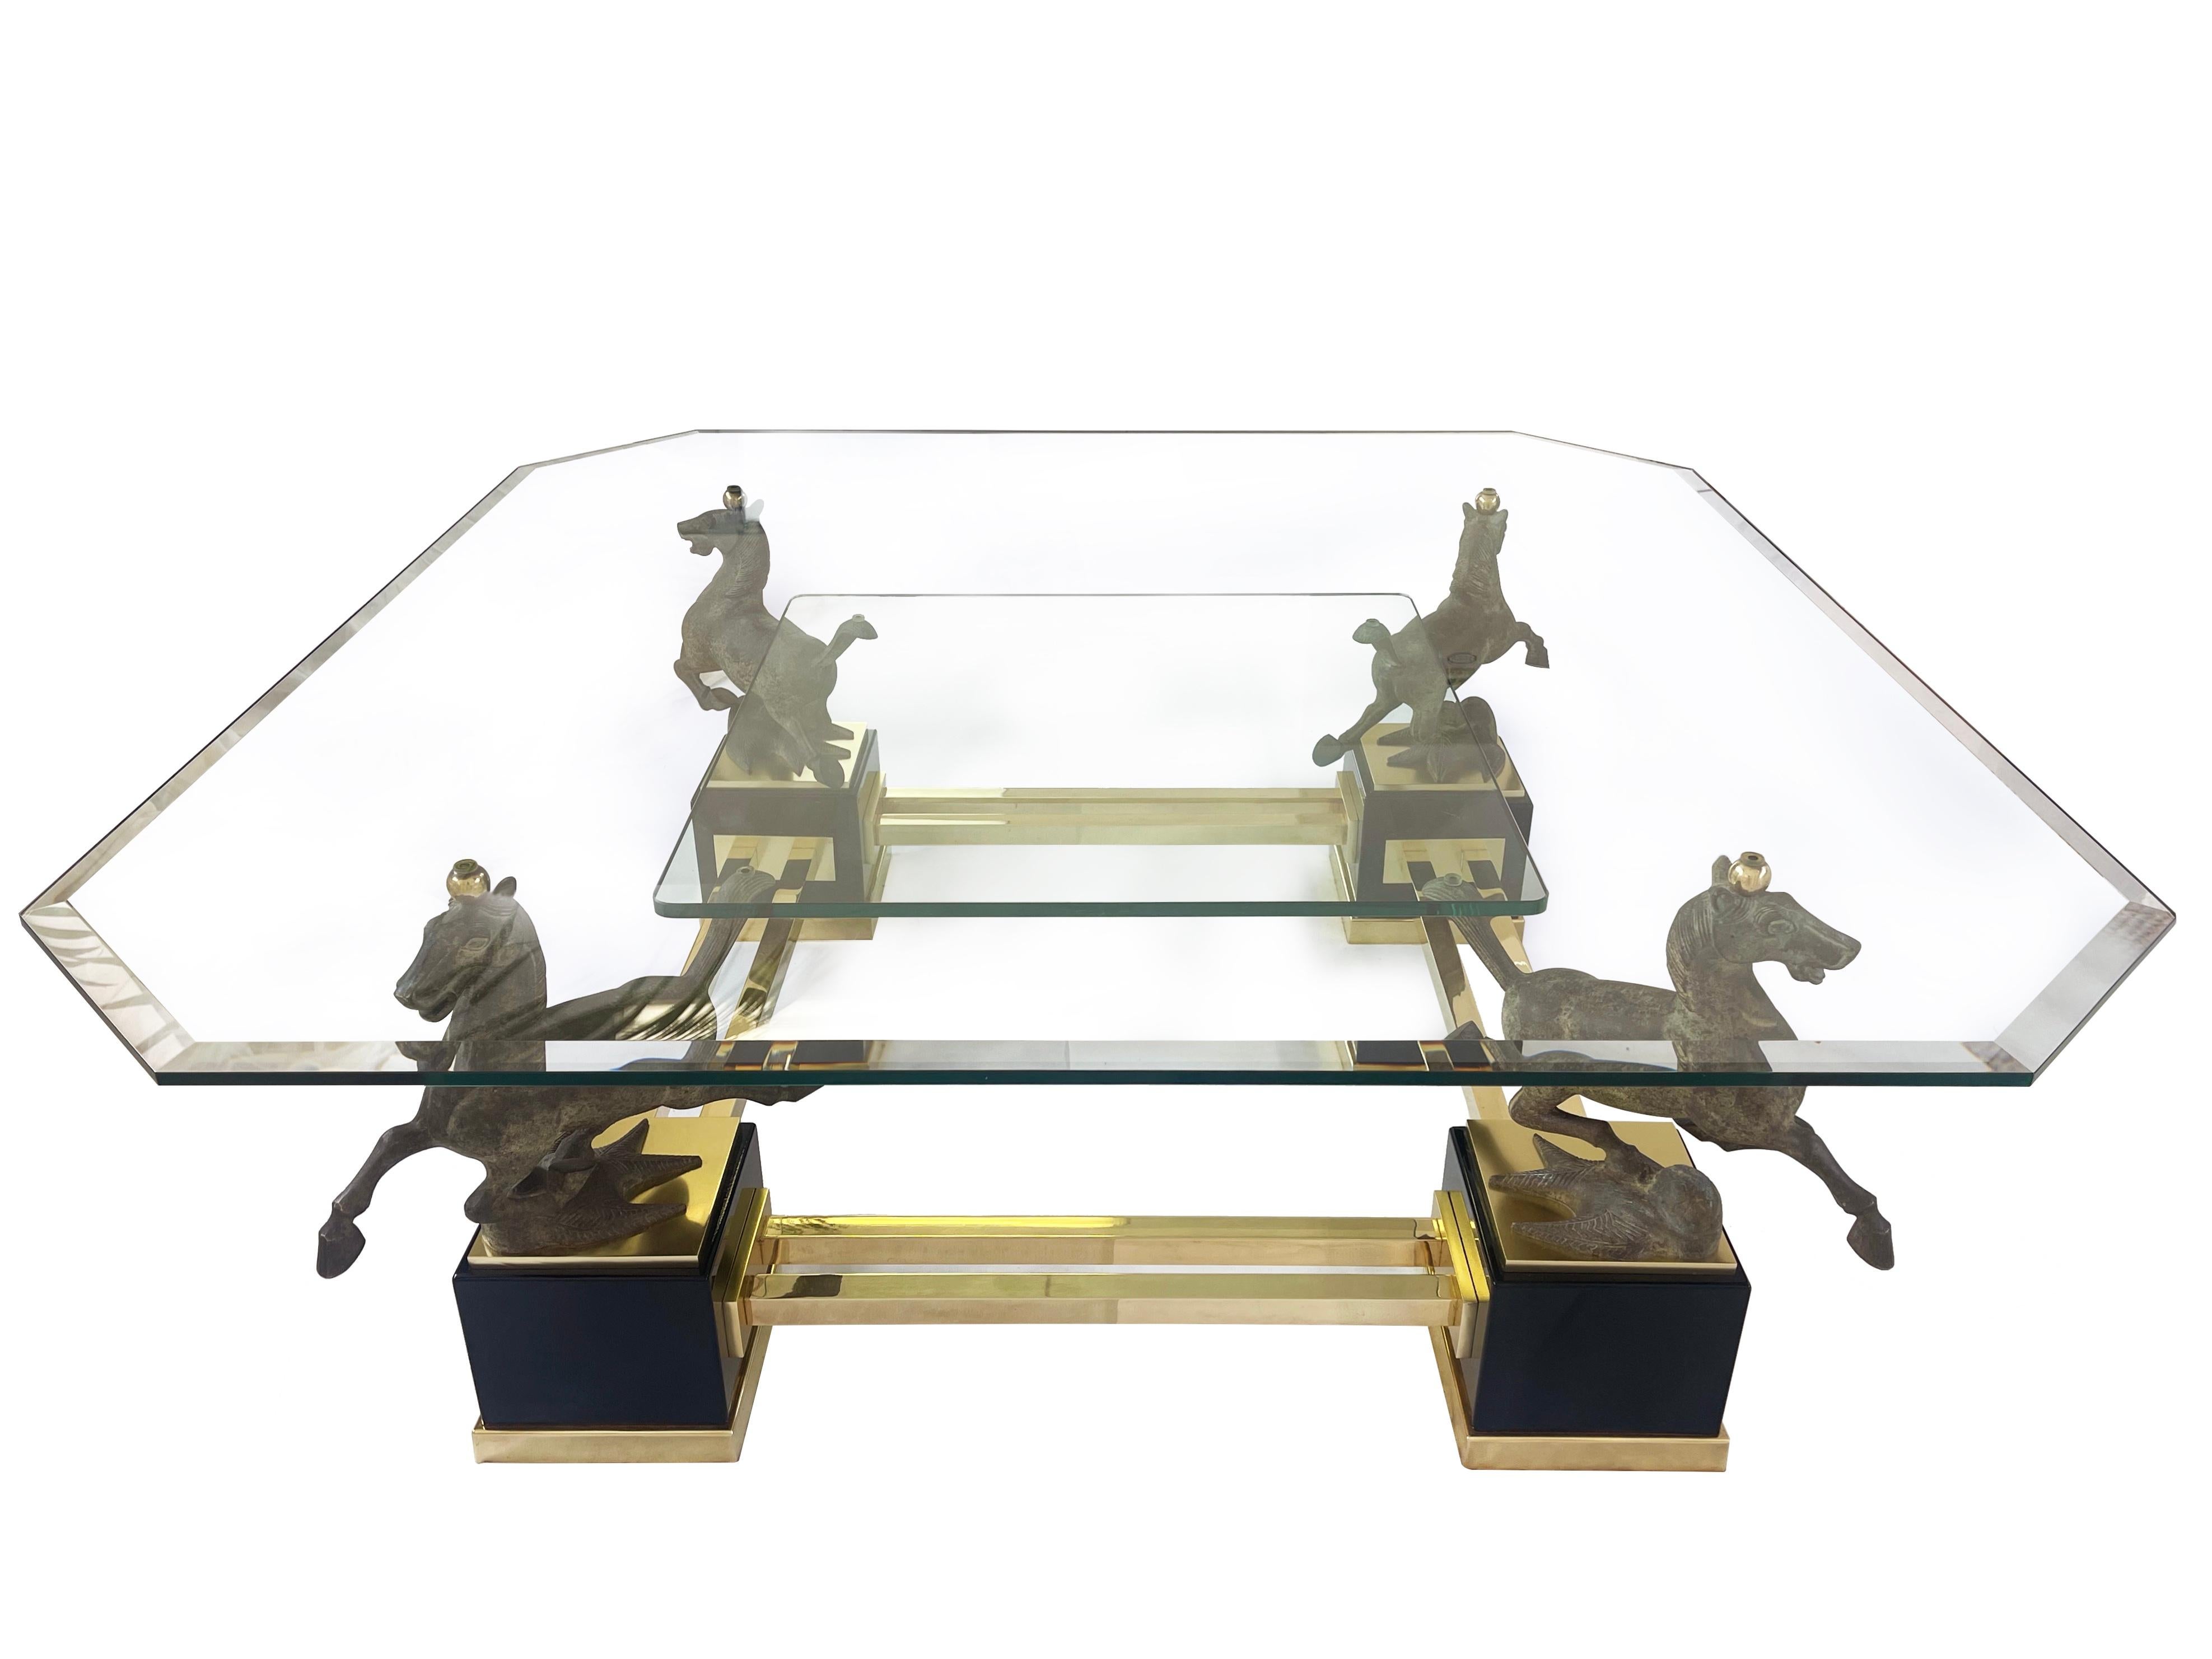 Très grande et impressionnante table basse carrée représentant quatre chevaux ''le cheval volant de Gansu'' en bronze massif.
Le plateau de la table est octogonal et fait de verre biseauté - et je suppose qu'il s'agit de l'original.
La plaque de